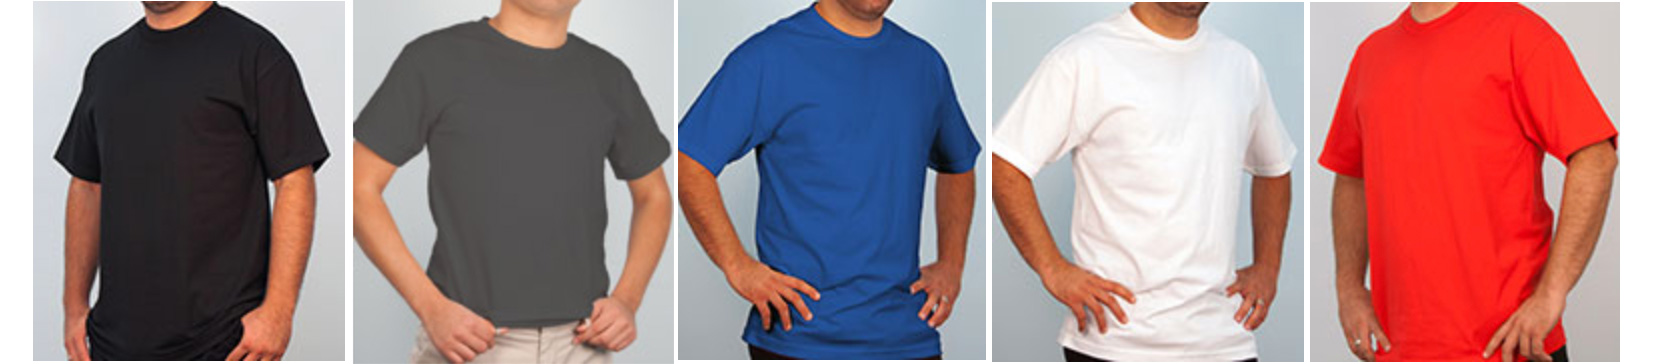 shirt-printing-color-options.jpg